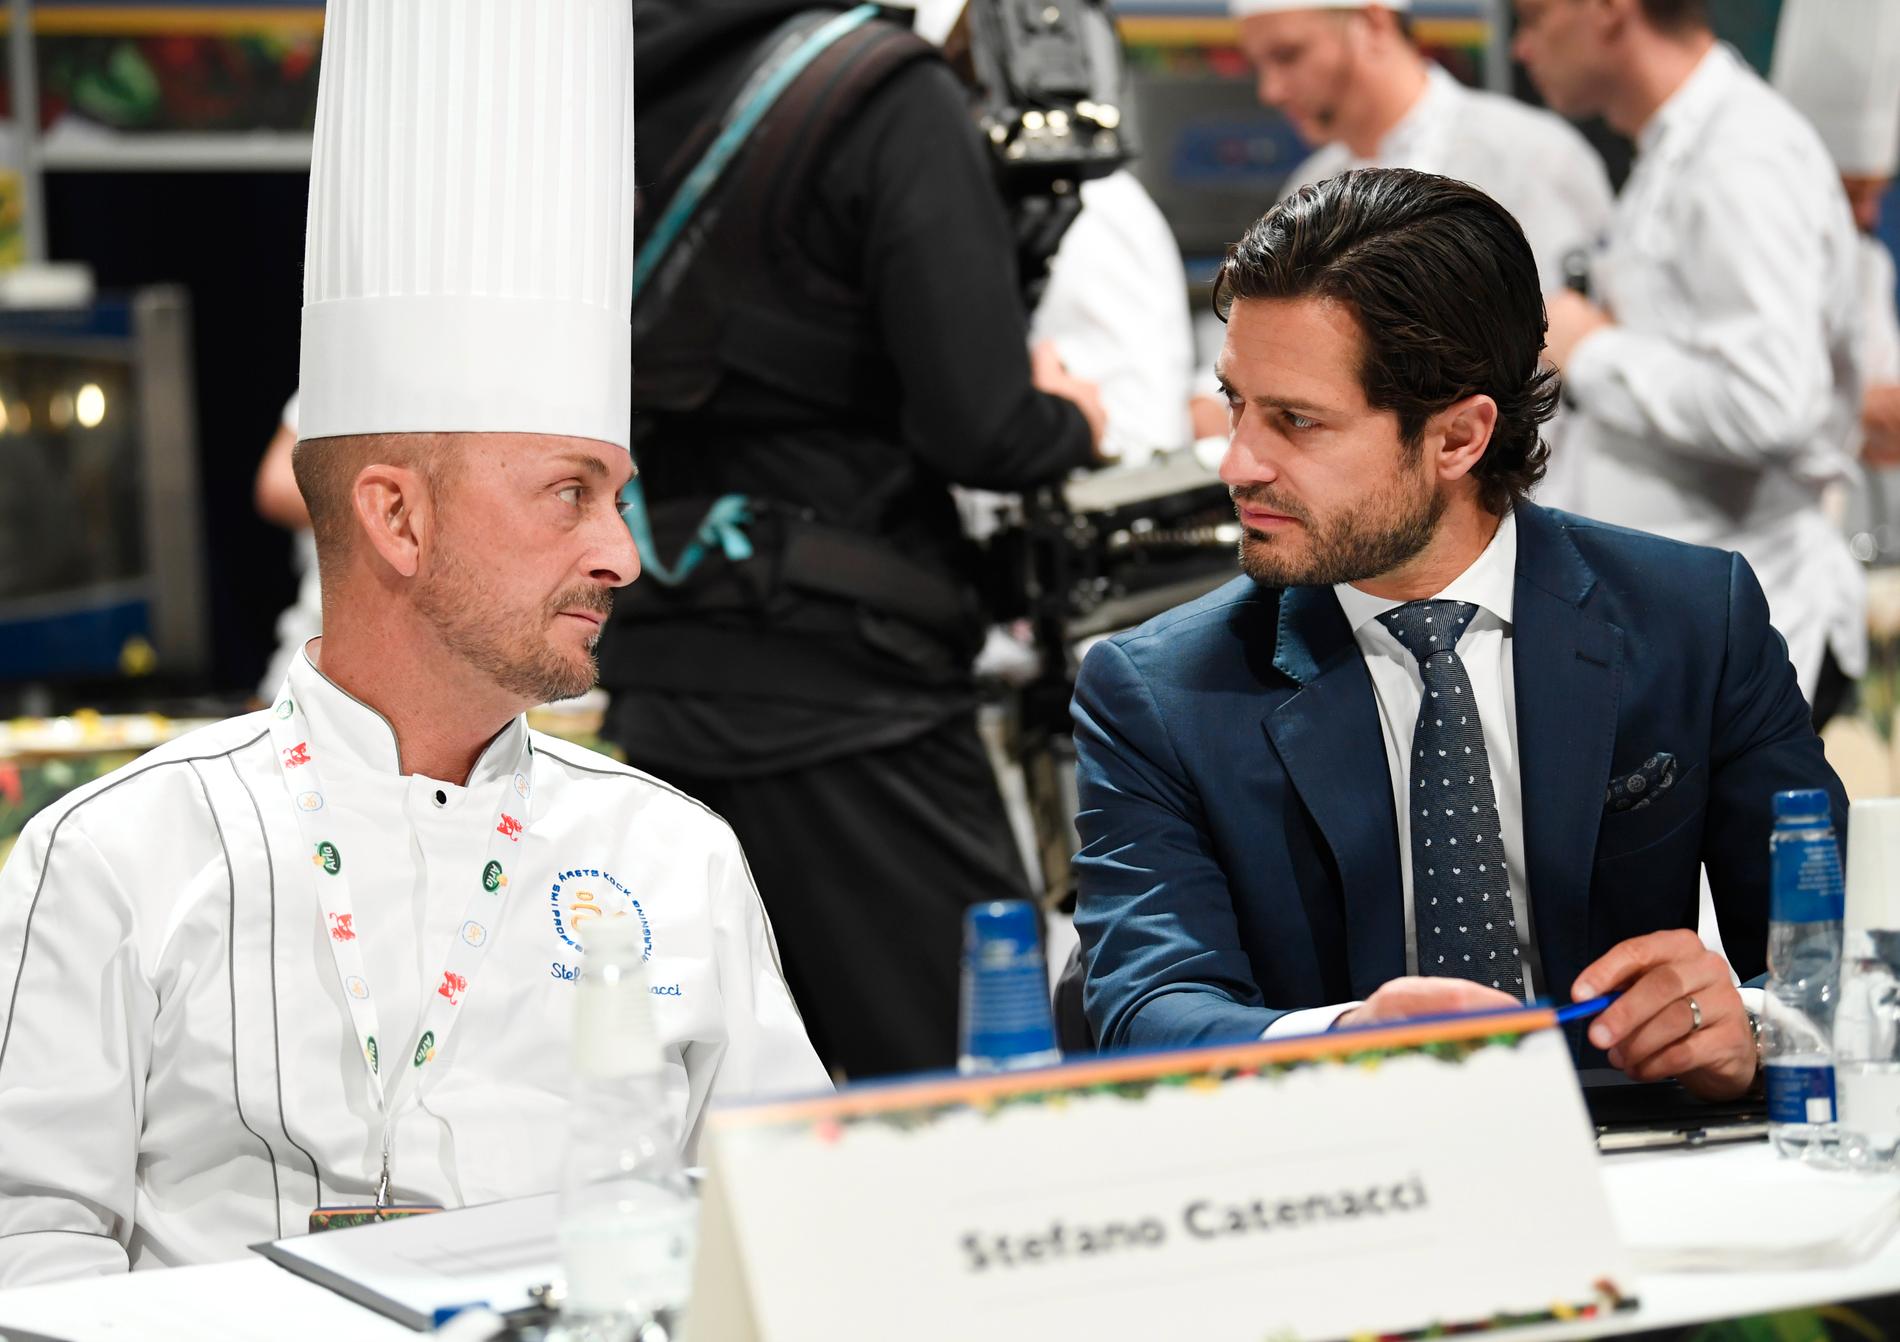 Stefano Catenacci och prins Carl Philip tillsammans som jurymedlemmar i finalen i Årets Kock 2019